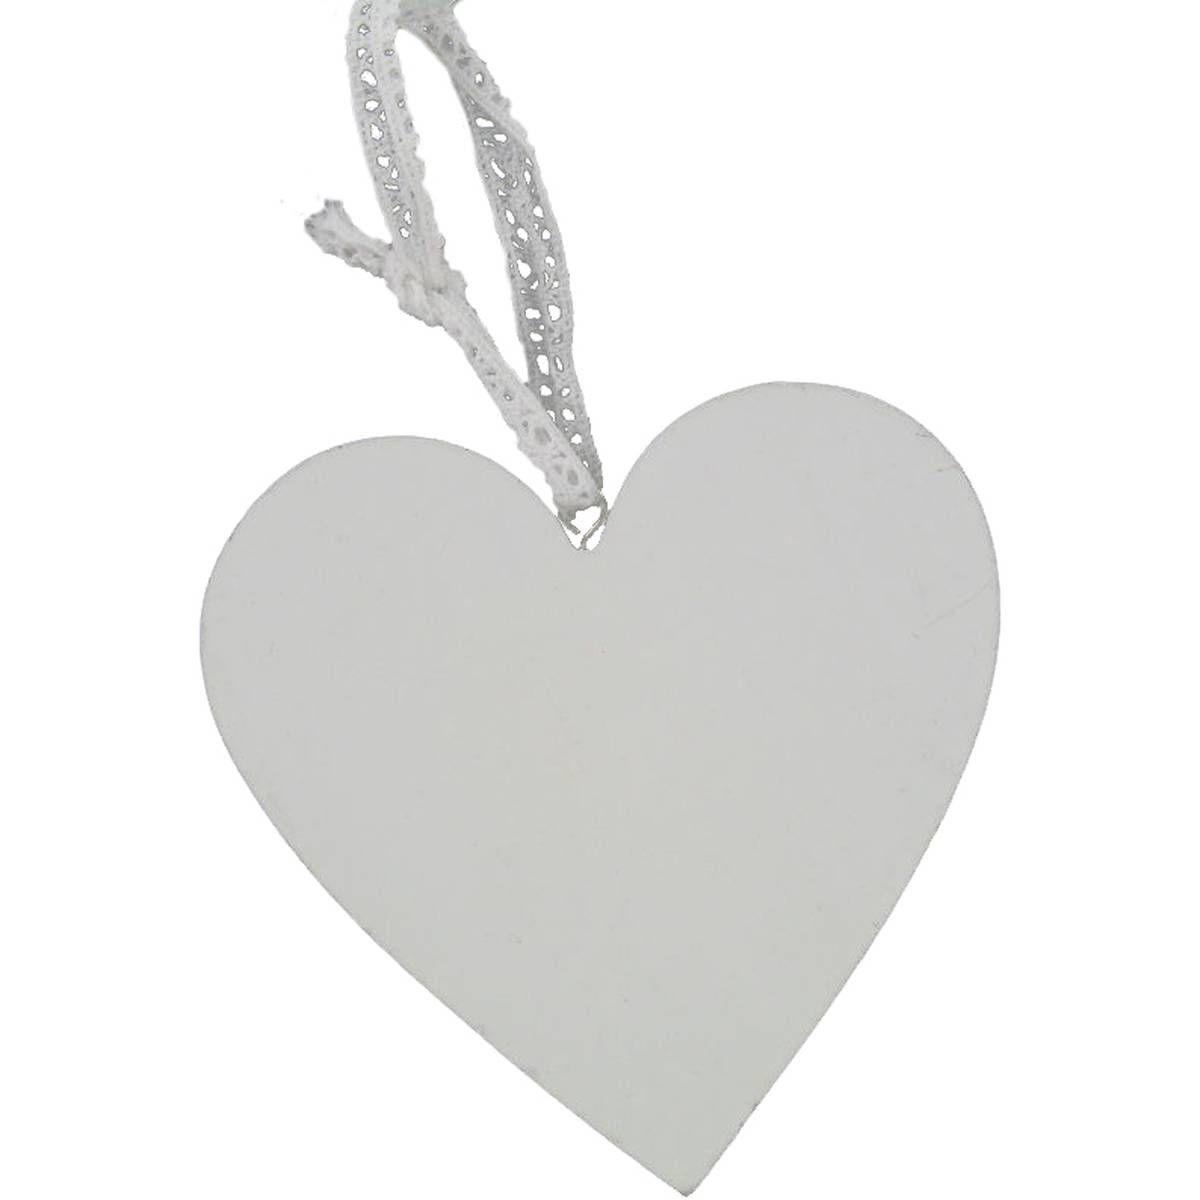 Black and White Heart Logo - White Wooden Heart Decoration 10Cm | Hobbycraft